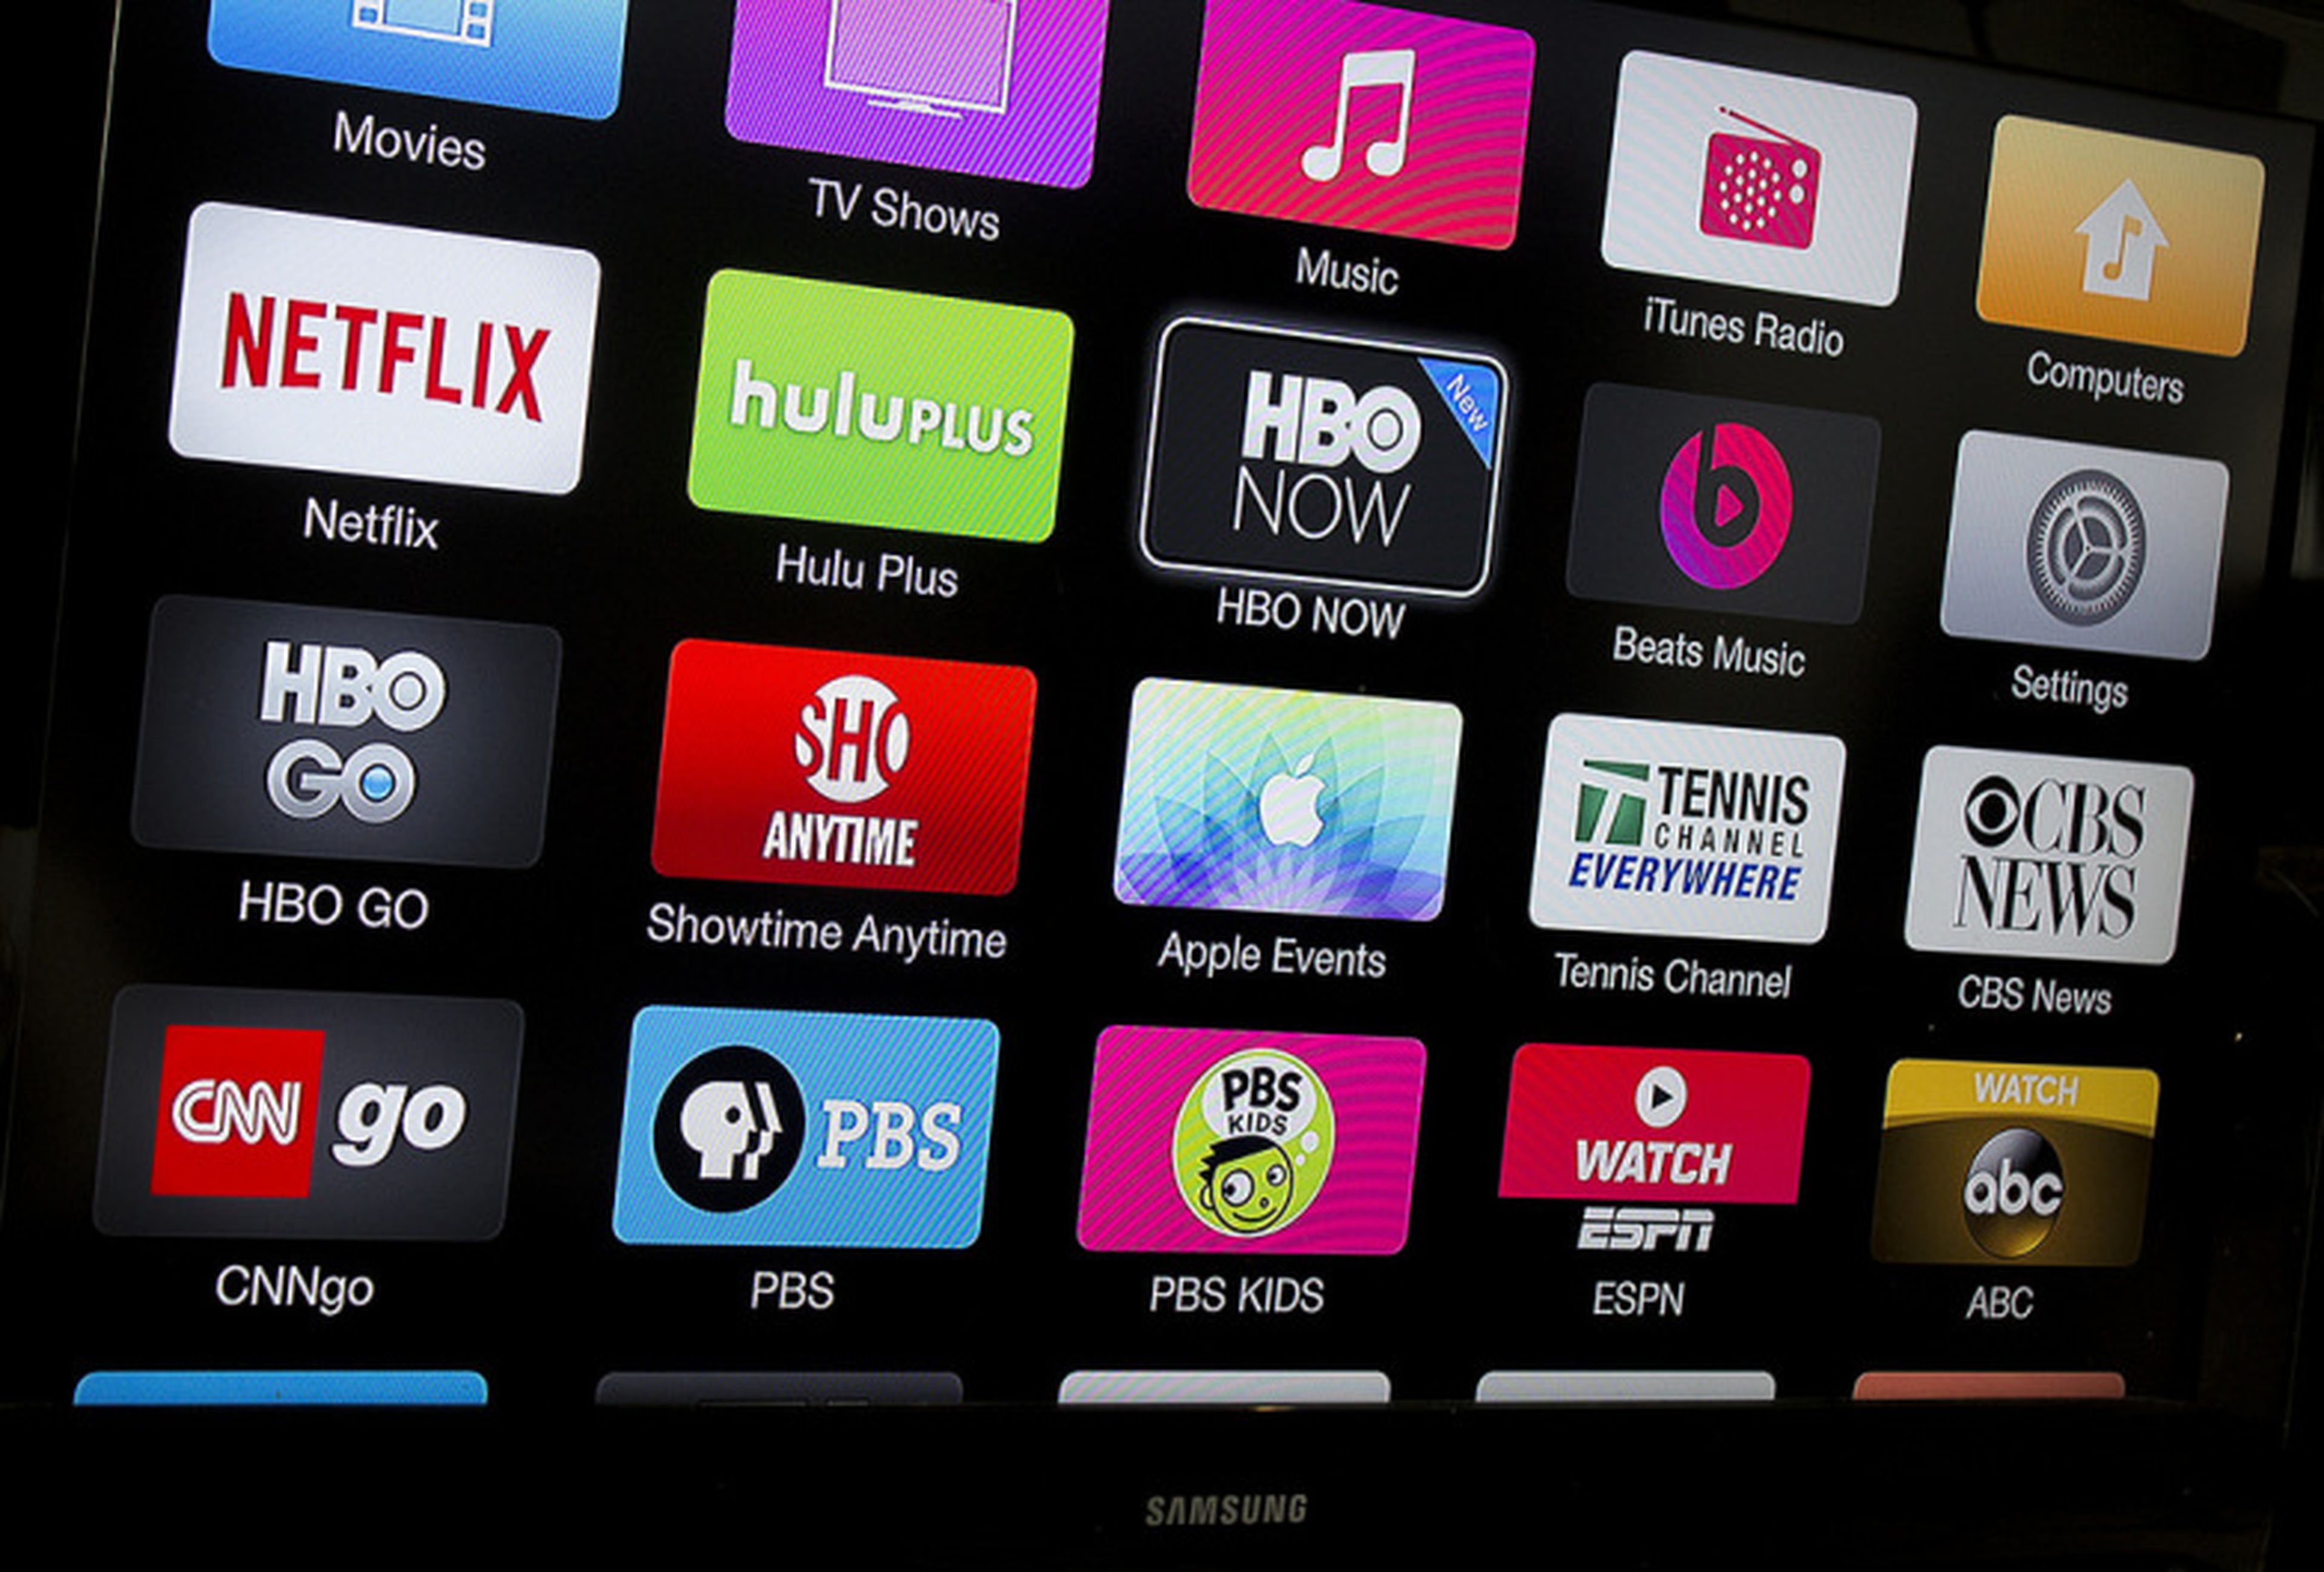 El servicio de streaming de Apple, Apple TV, llegará este otoño con soporte para 4K y HDR